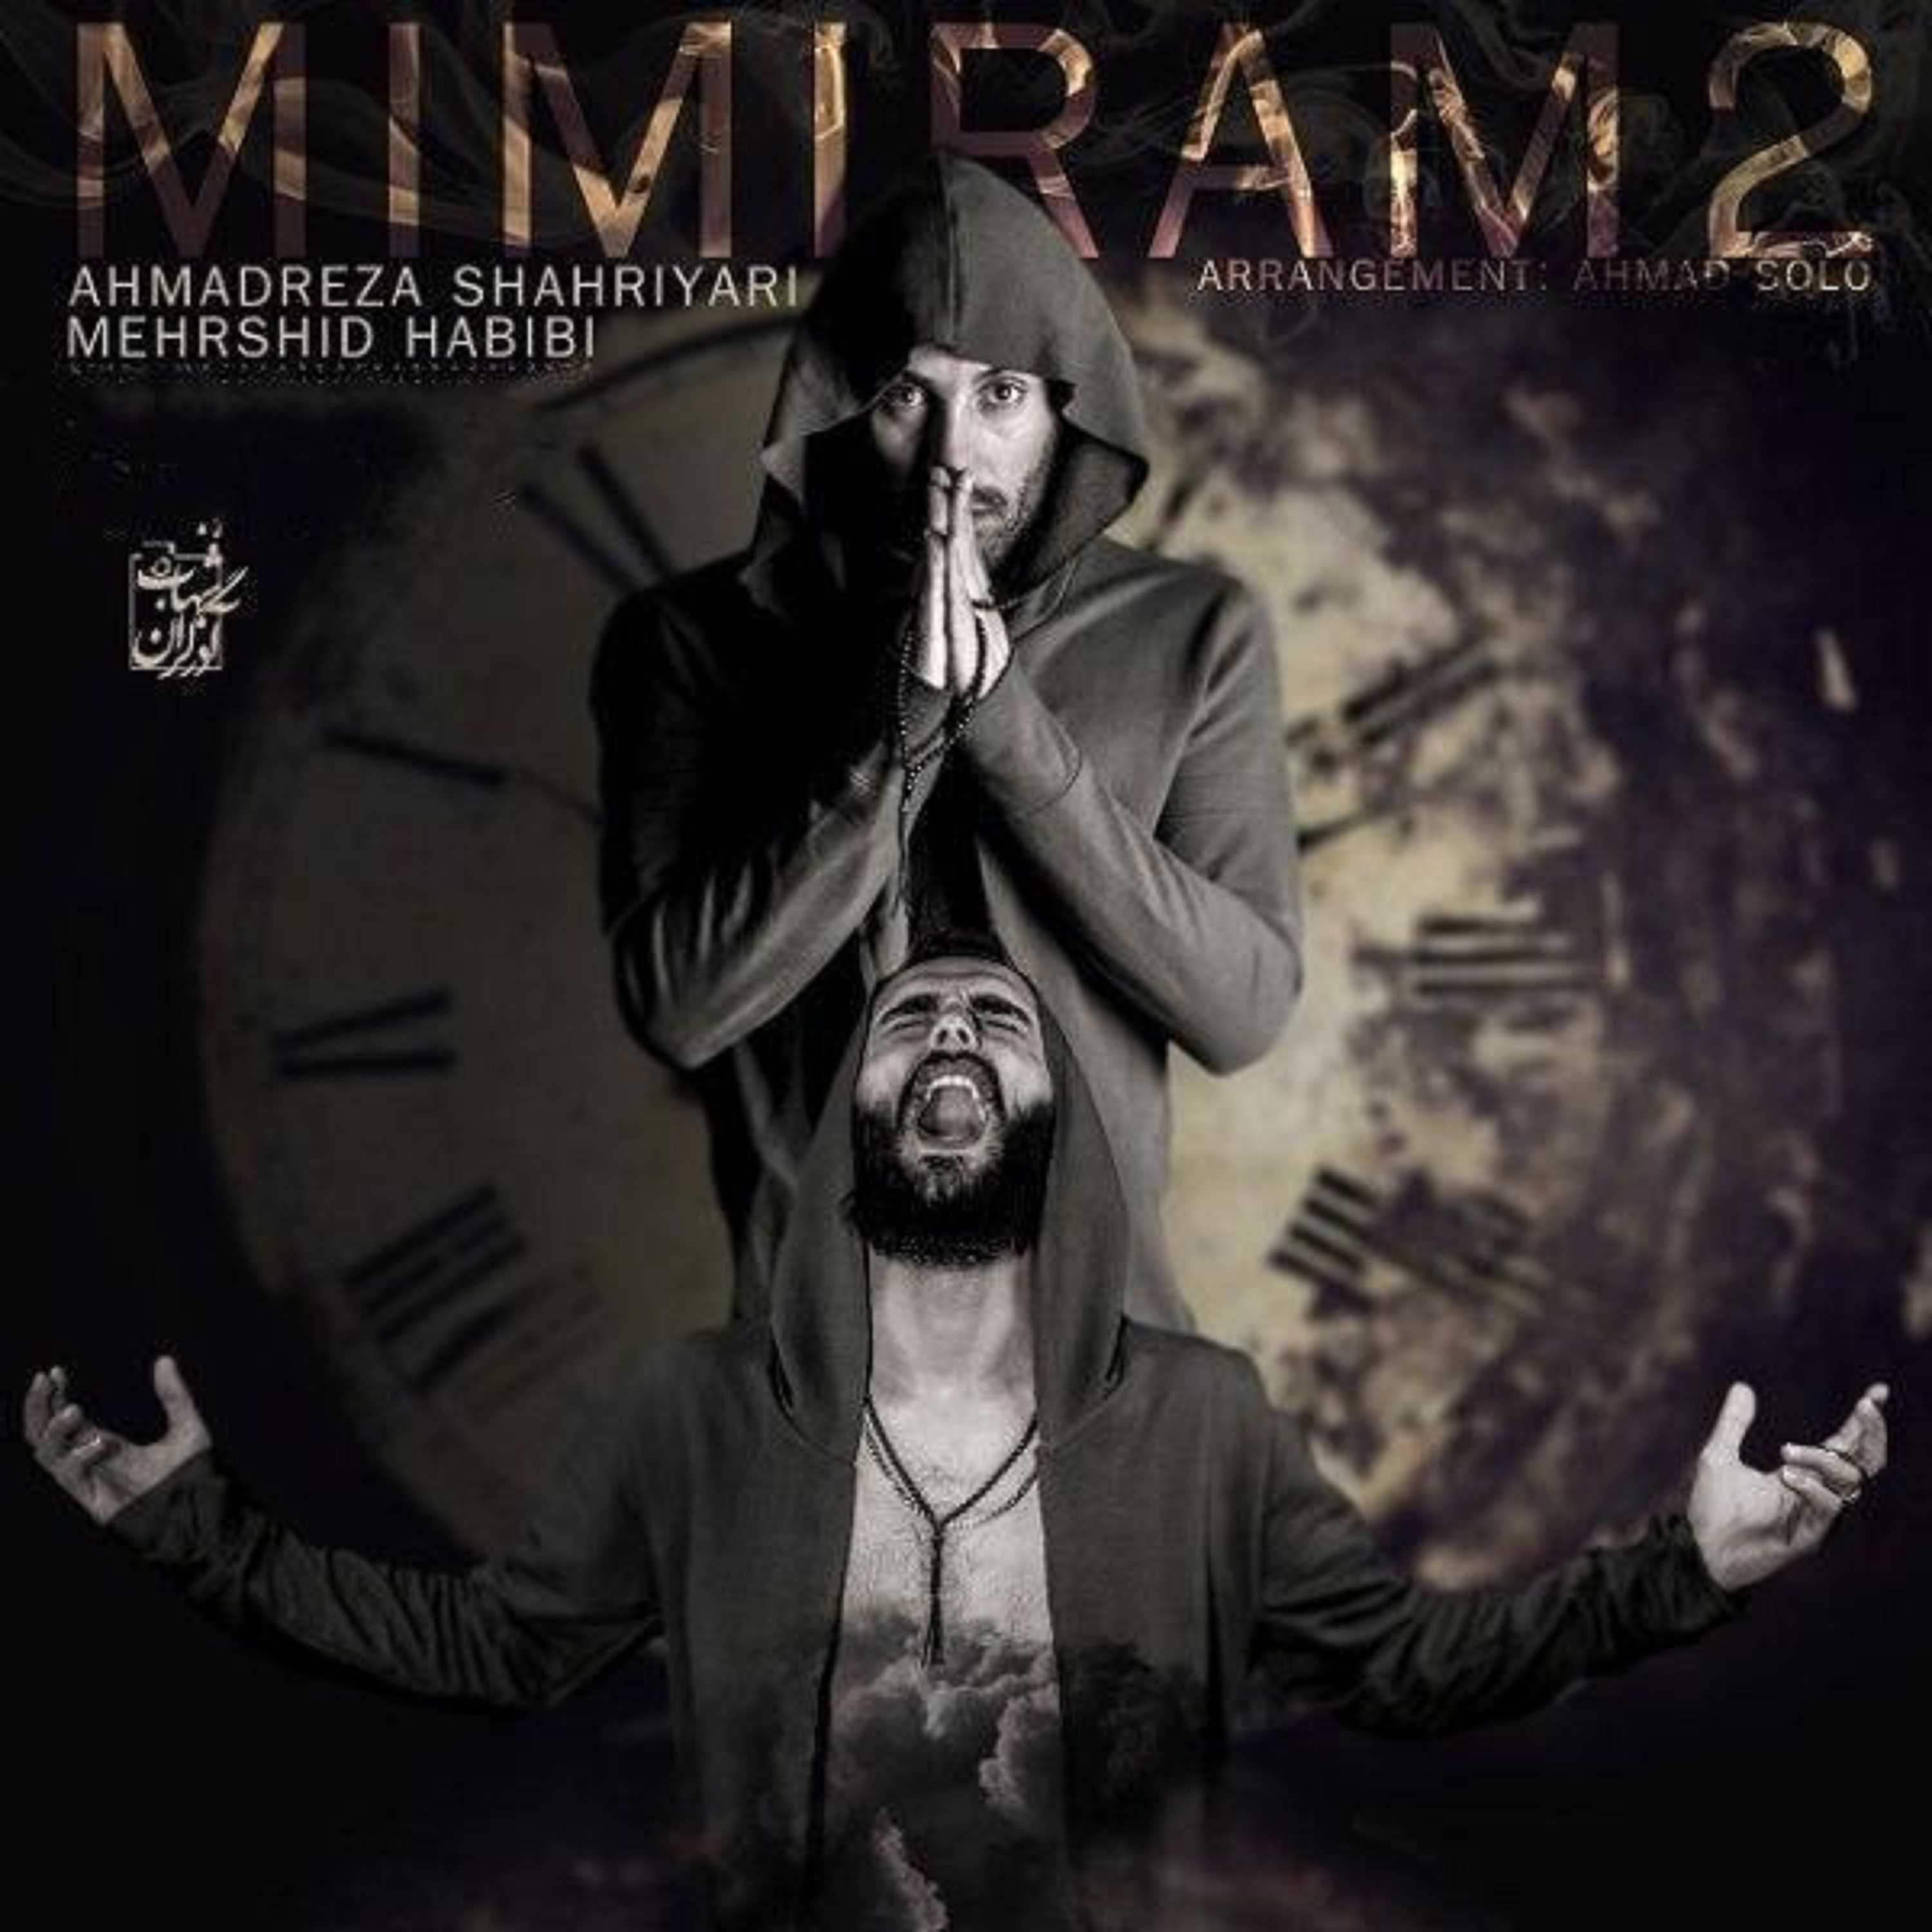  دانلود آهنگ جدید احمد سلو - میمیرم ۲ | Download New Music By Ahmad Solo - Mimiram 2 (feat. Mehrshid Habibi)